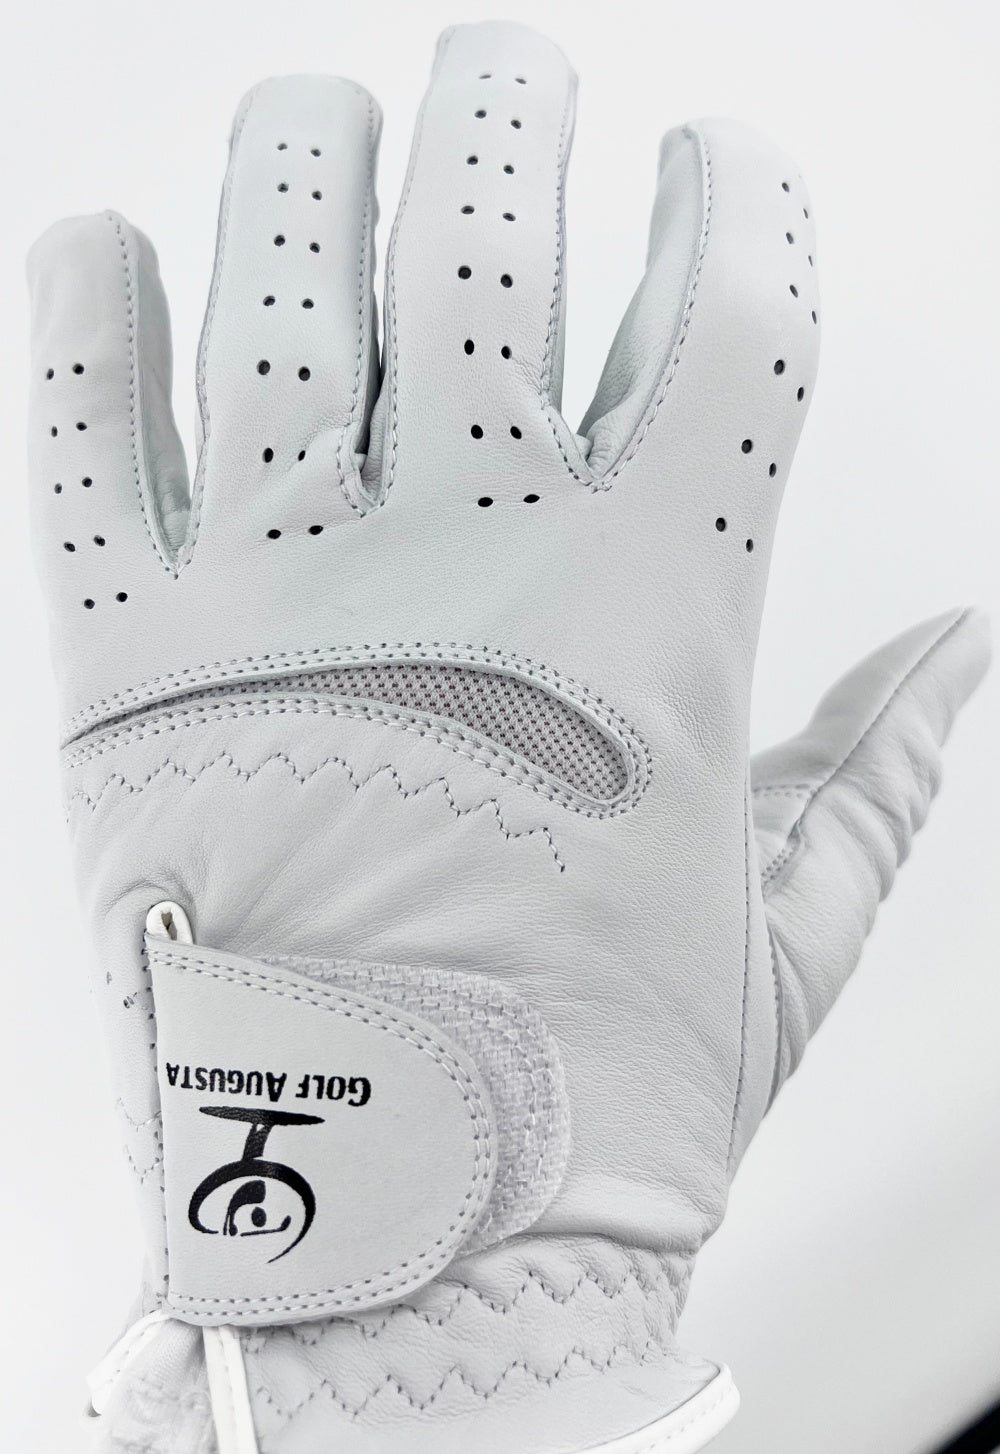 Golf Augusta Premium Cabretta Leather Golf Glove 2 Gloves CHOOSE SIZE